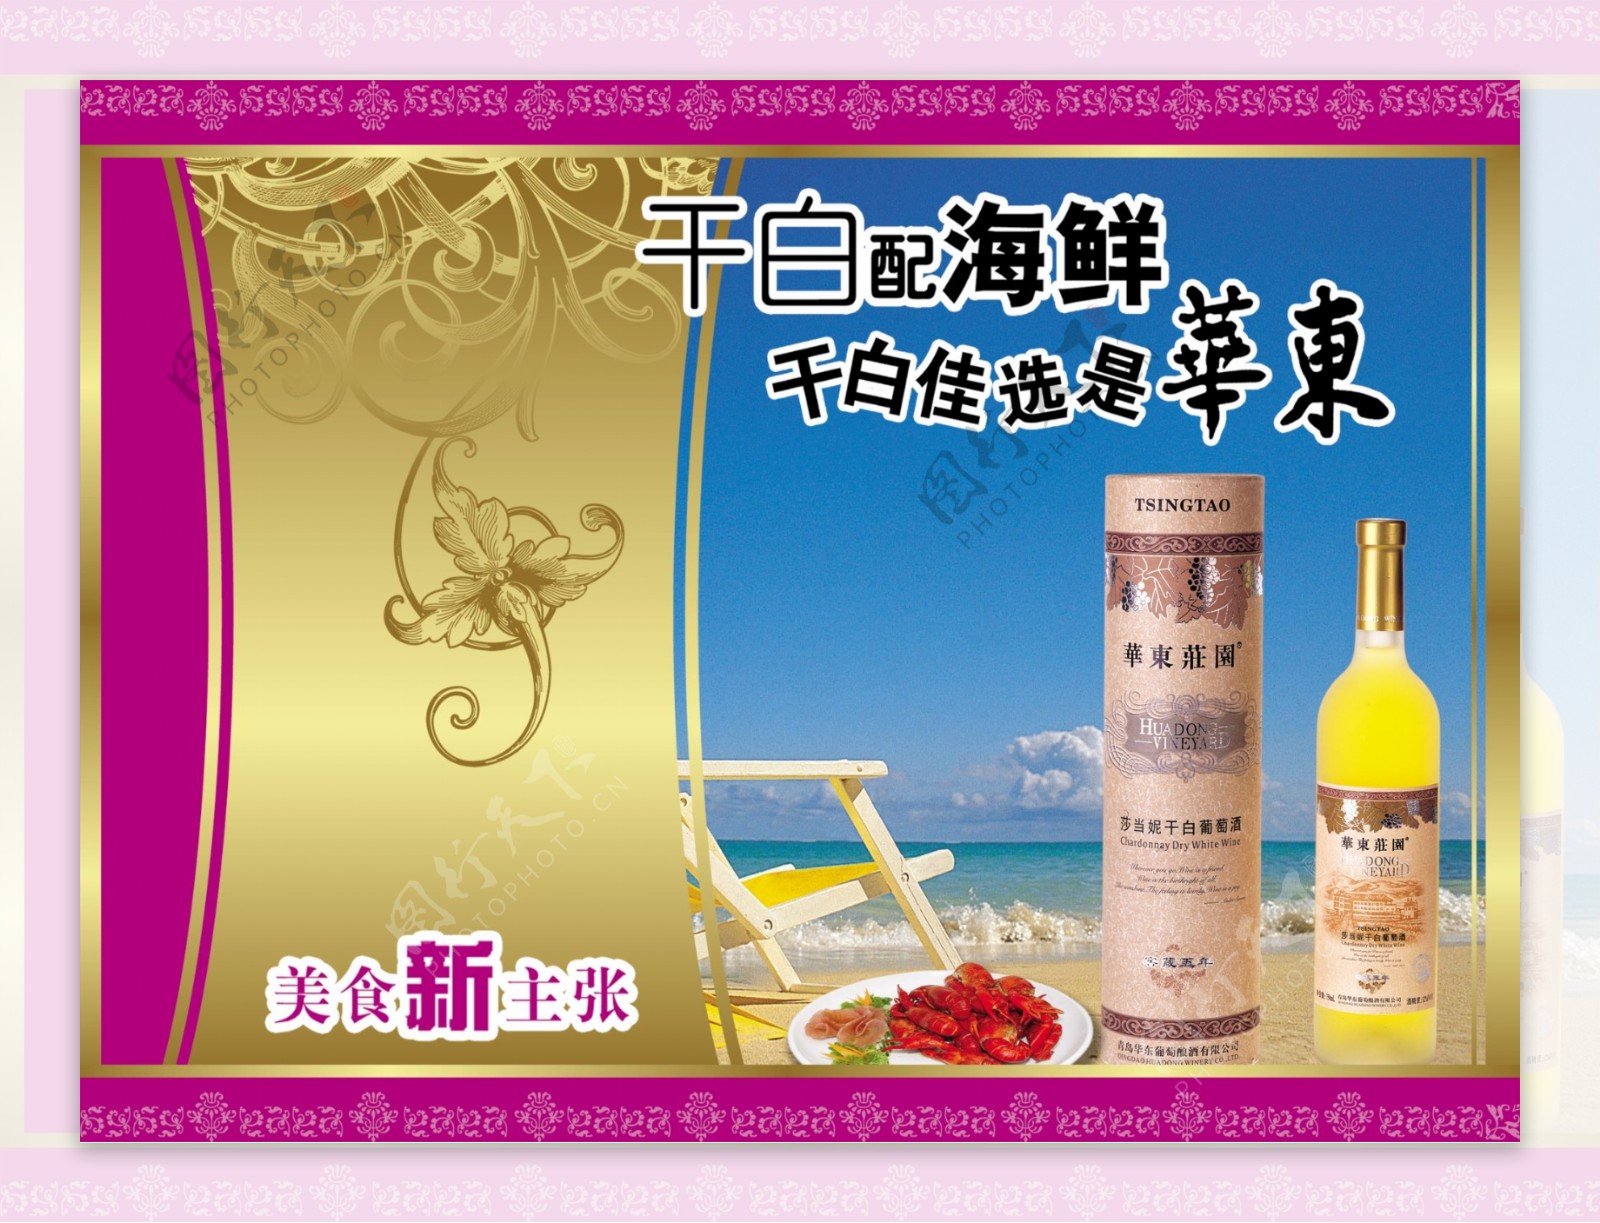 龙腾广告平面广告PSD分层素材源文件酒干白海鲜海边华东庄园